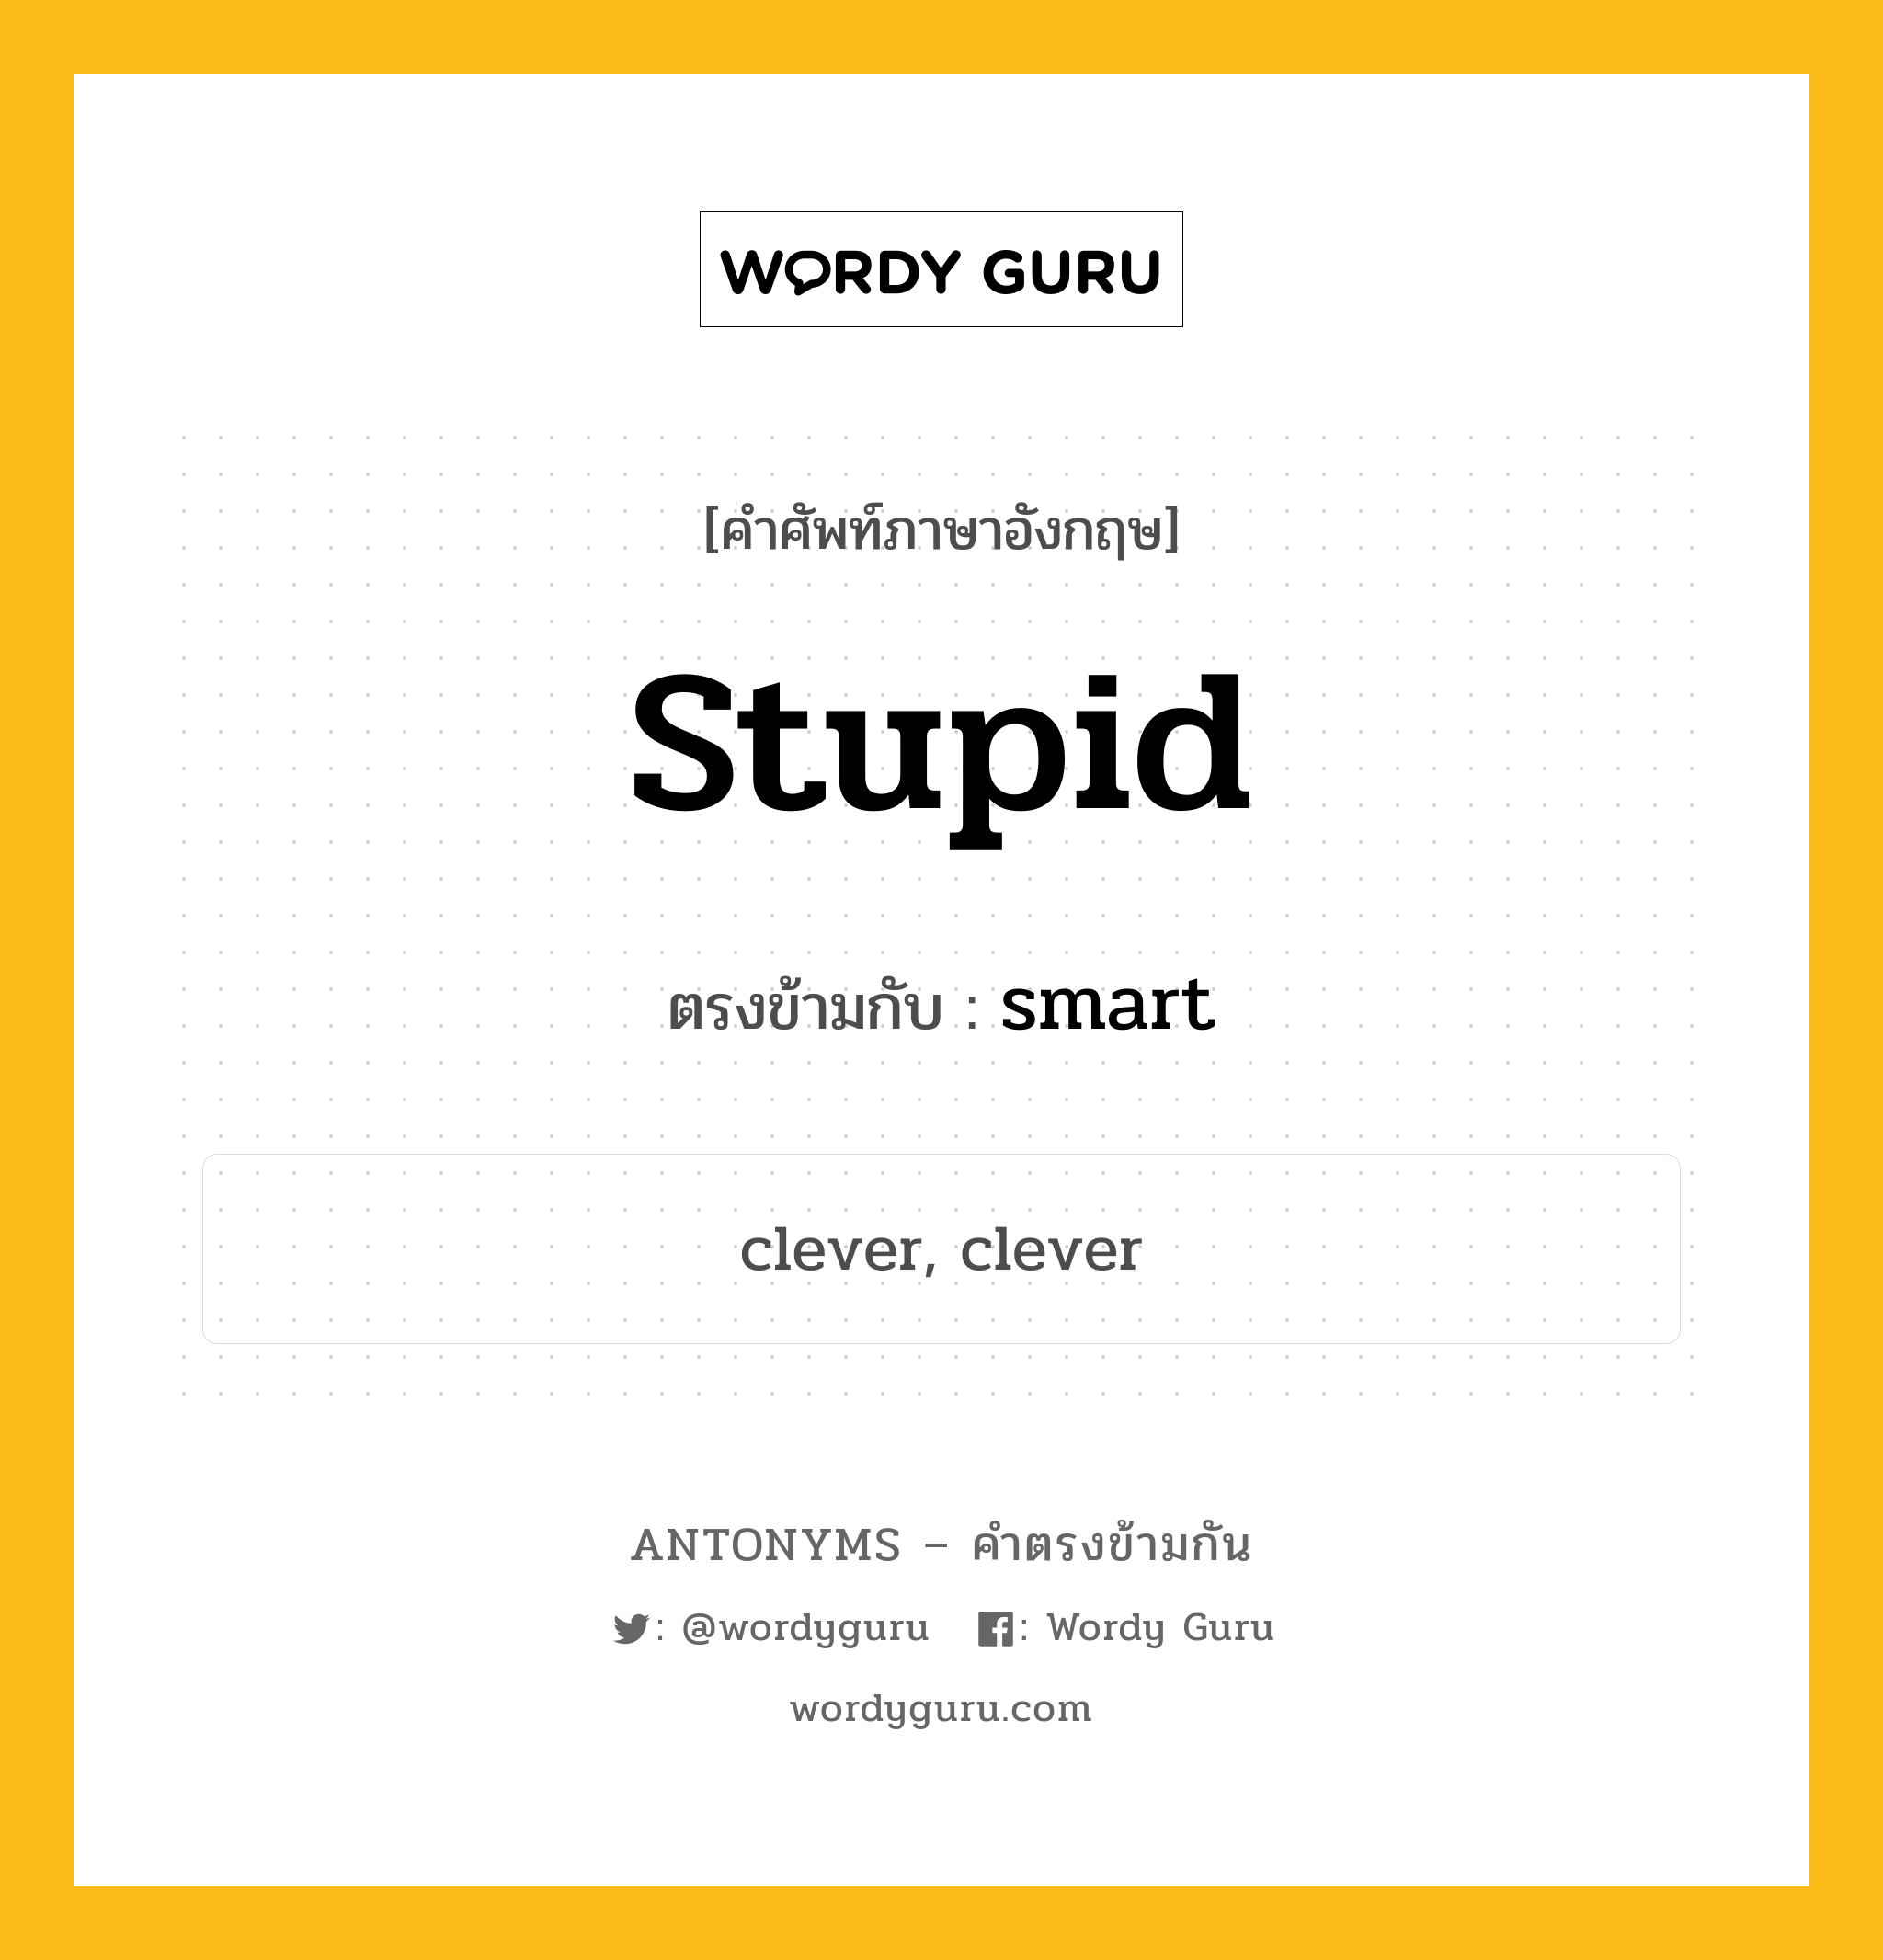 stupid เป็นคำตรงข้ามกับคำไหนบ้าง?, คำศัพท์ภาษาอังกฤษ stupid ตรงข้ามกับ smart หมวด smart